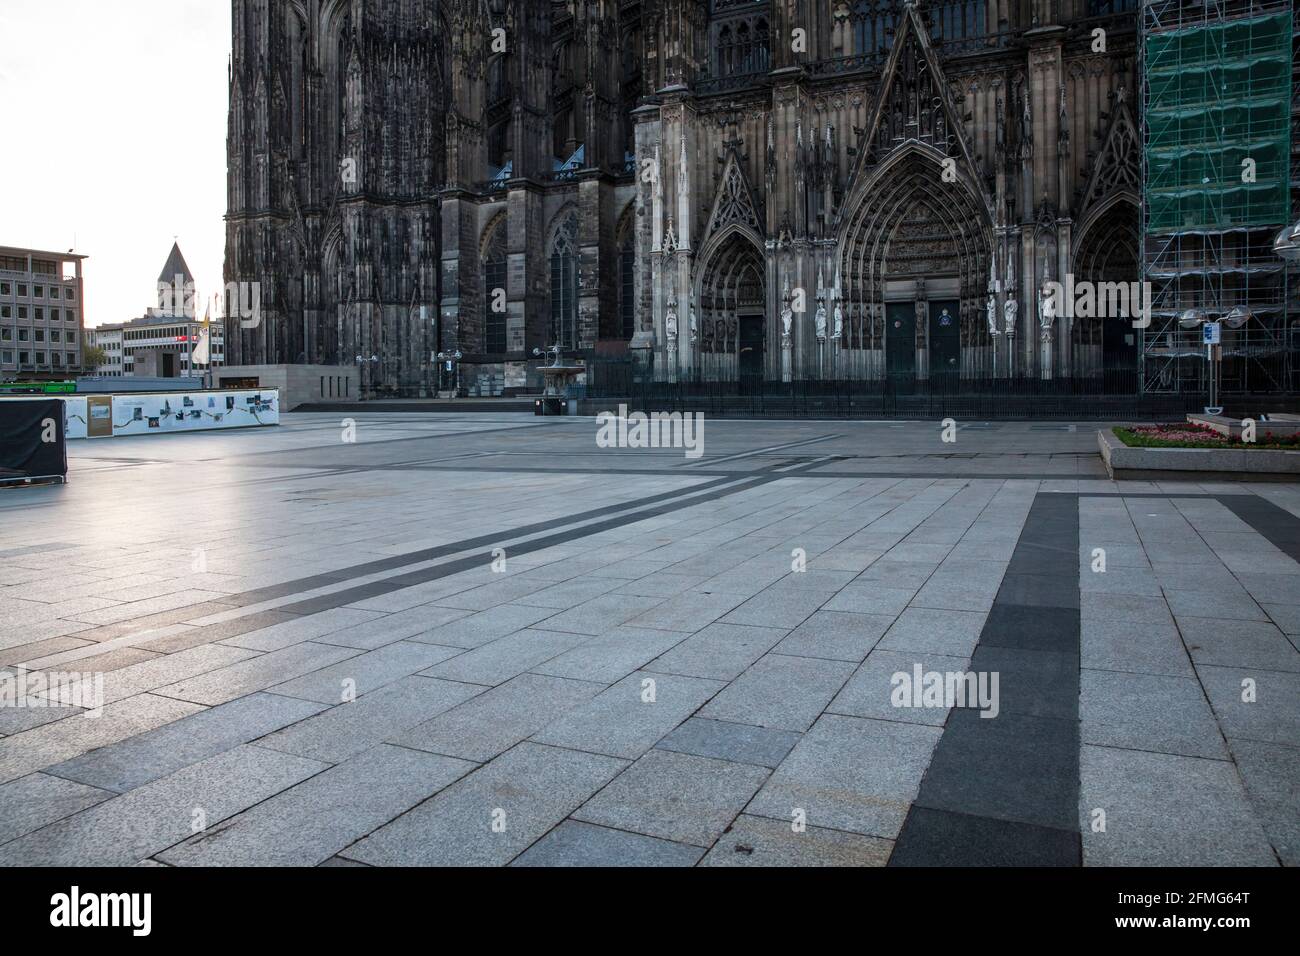 Coprifuoco dalle 21:00 durante il blocco della corona pandemia il 5 maggio. 2021. La piazza deserta intorno alla Cattedrale di Colonia, Colonia, Germania. Ausgangsperre ab Foto Stock